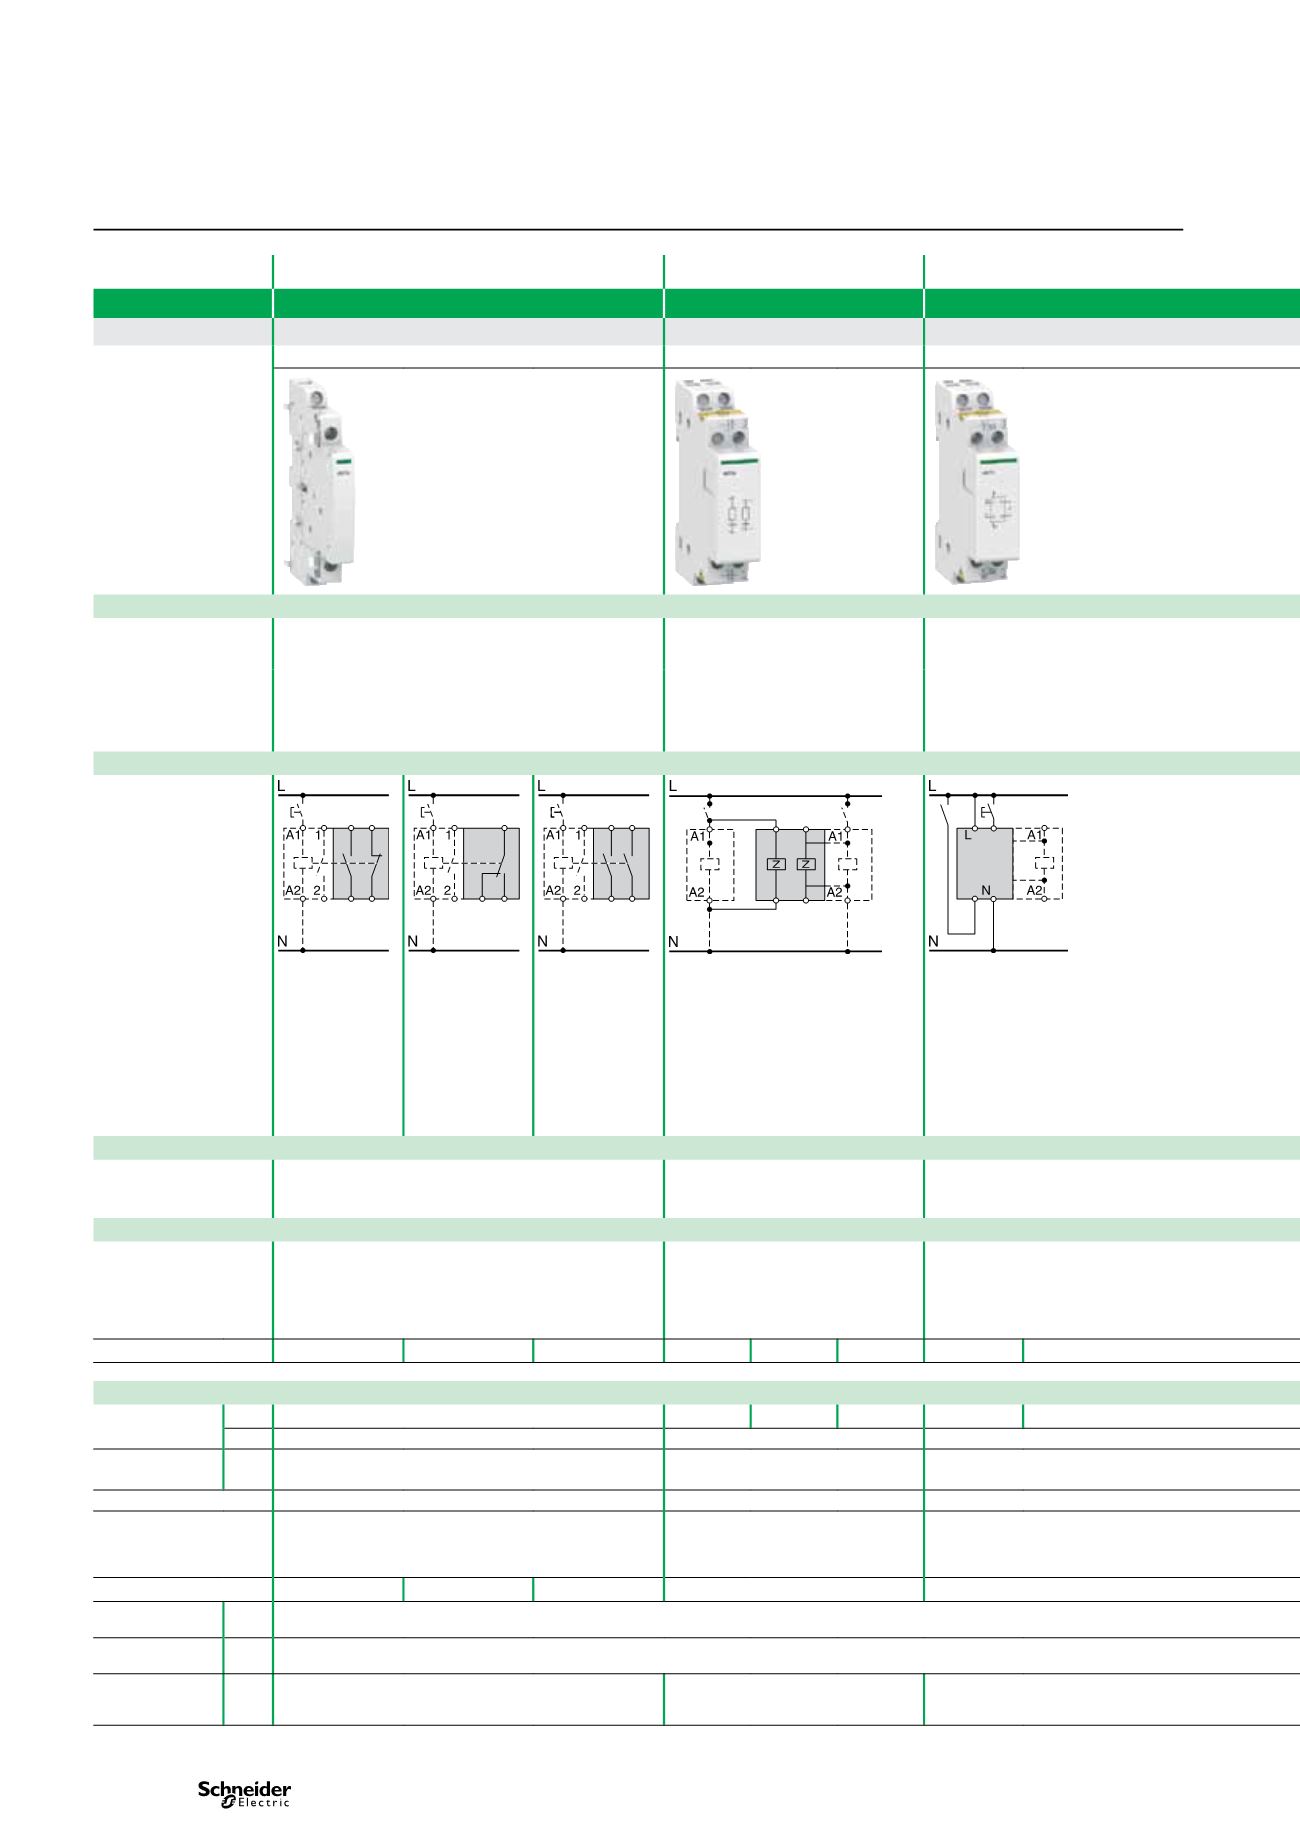 Schneider Ict Contactor Wiring Diagram